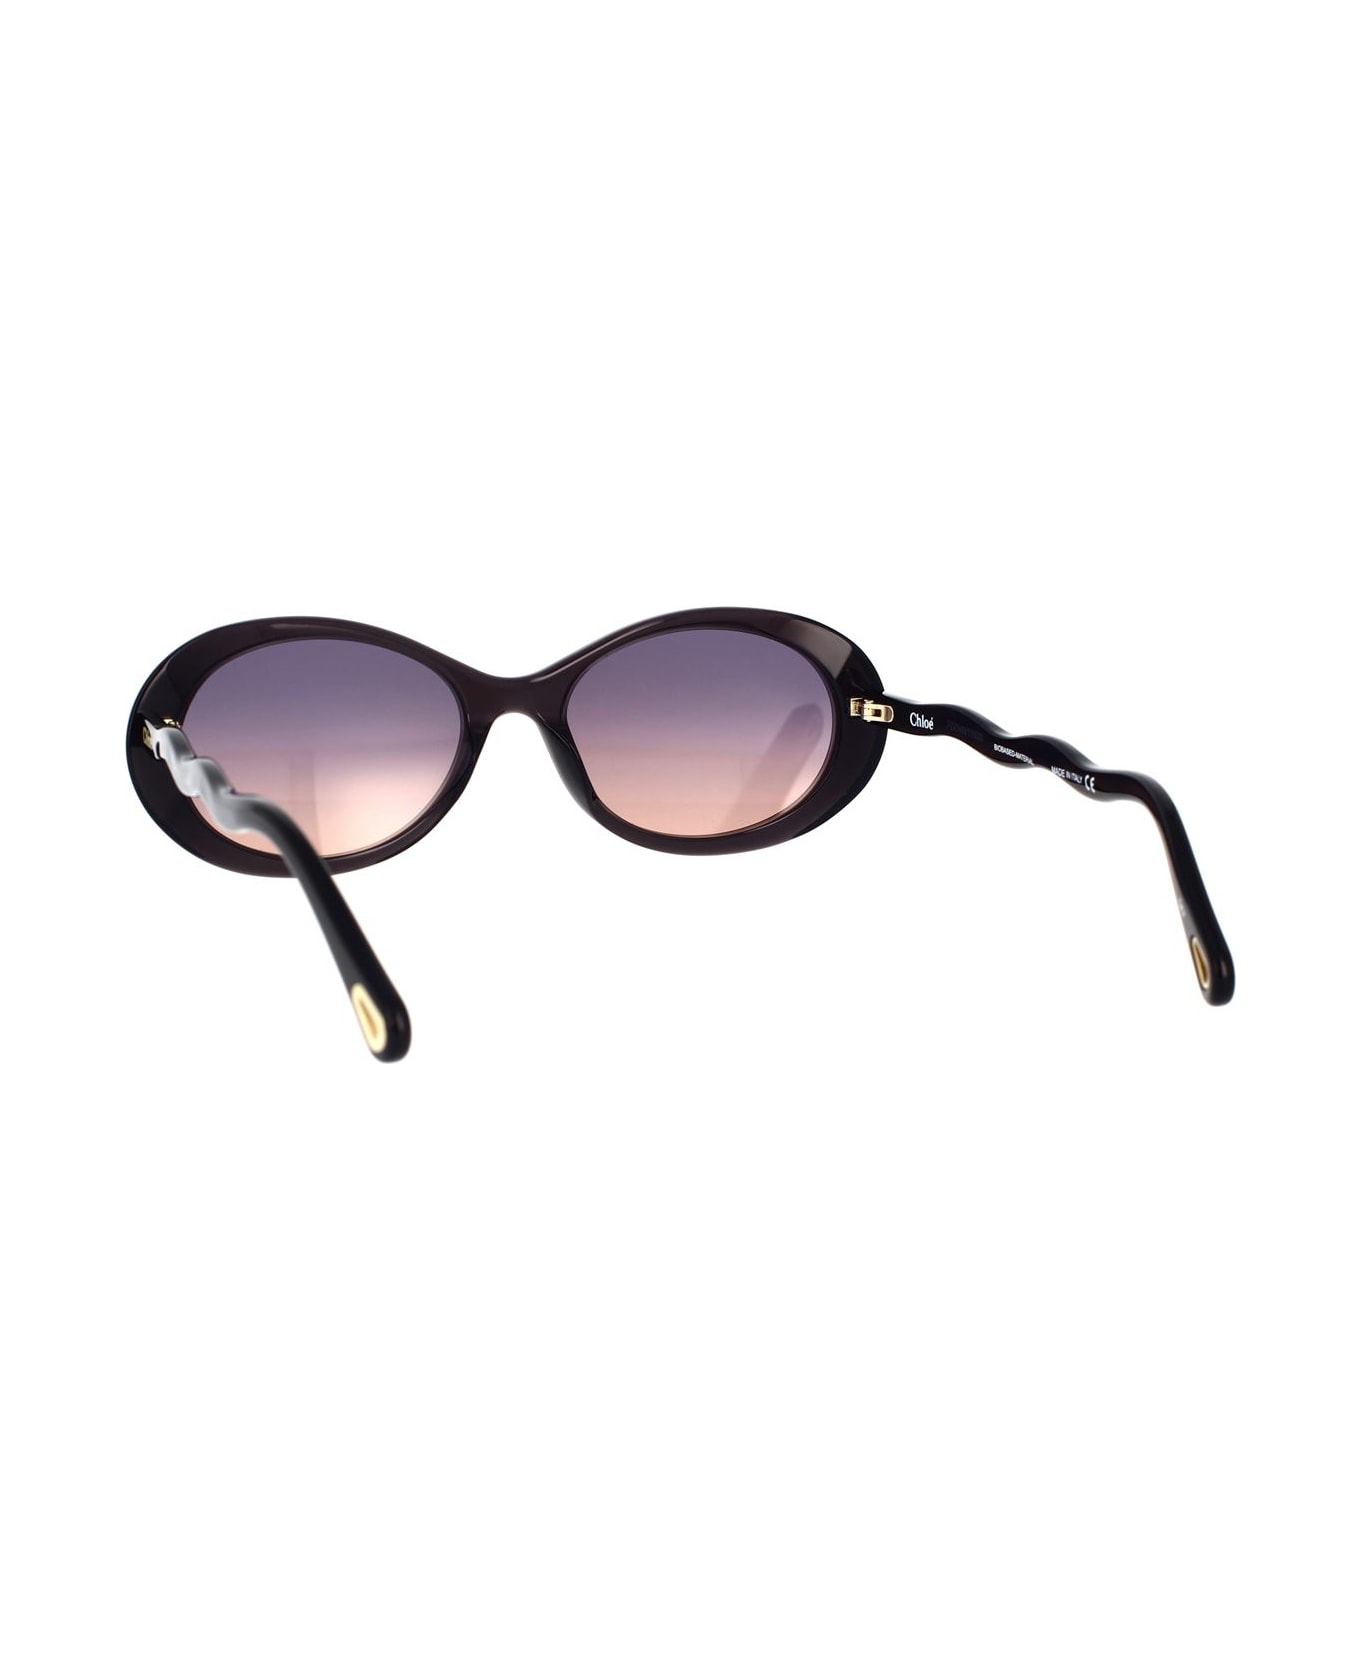 Chloé Black Zelie Sunglasses - Black